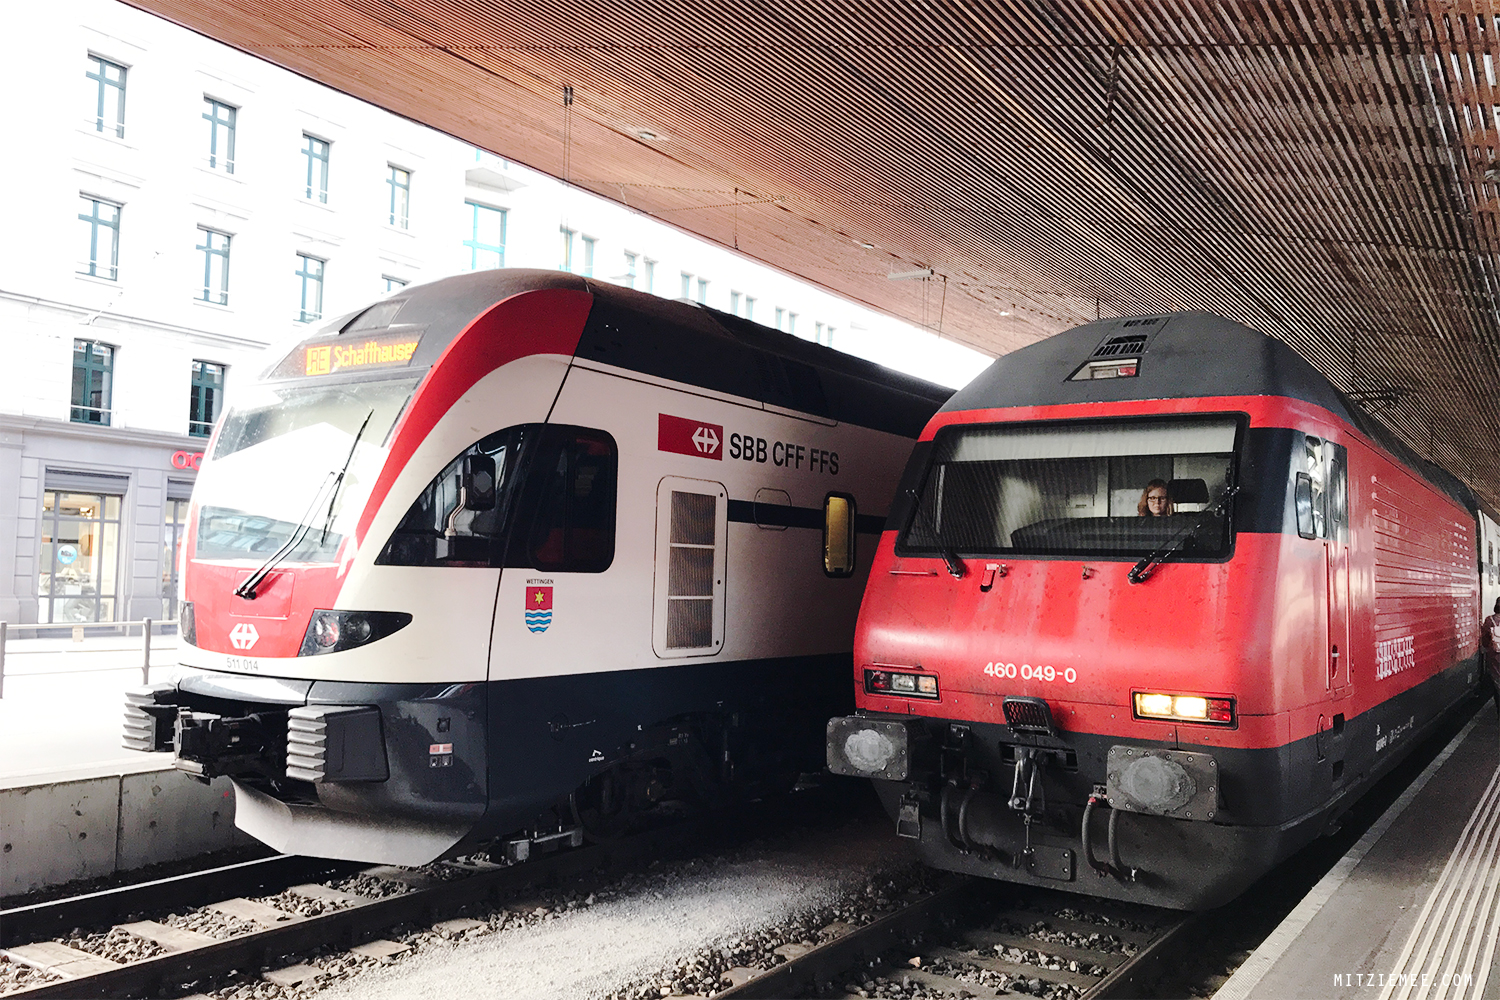 Zurich train station